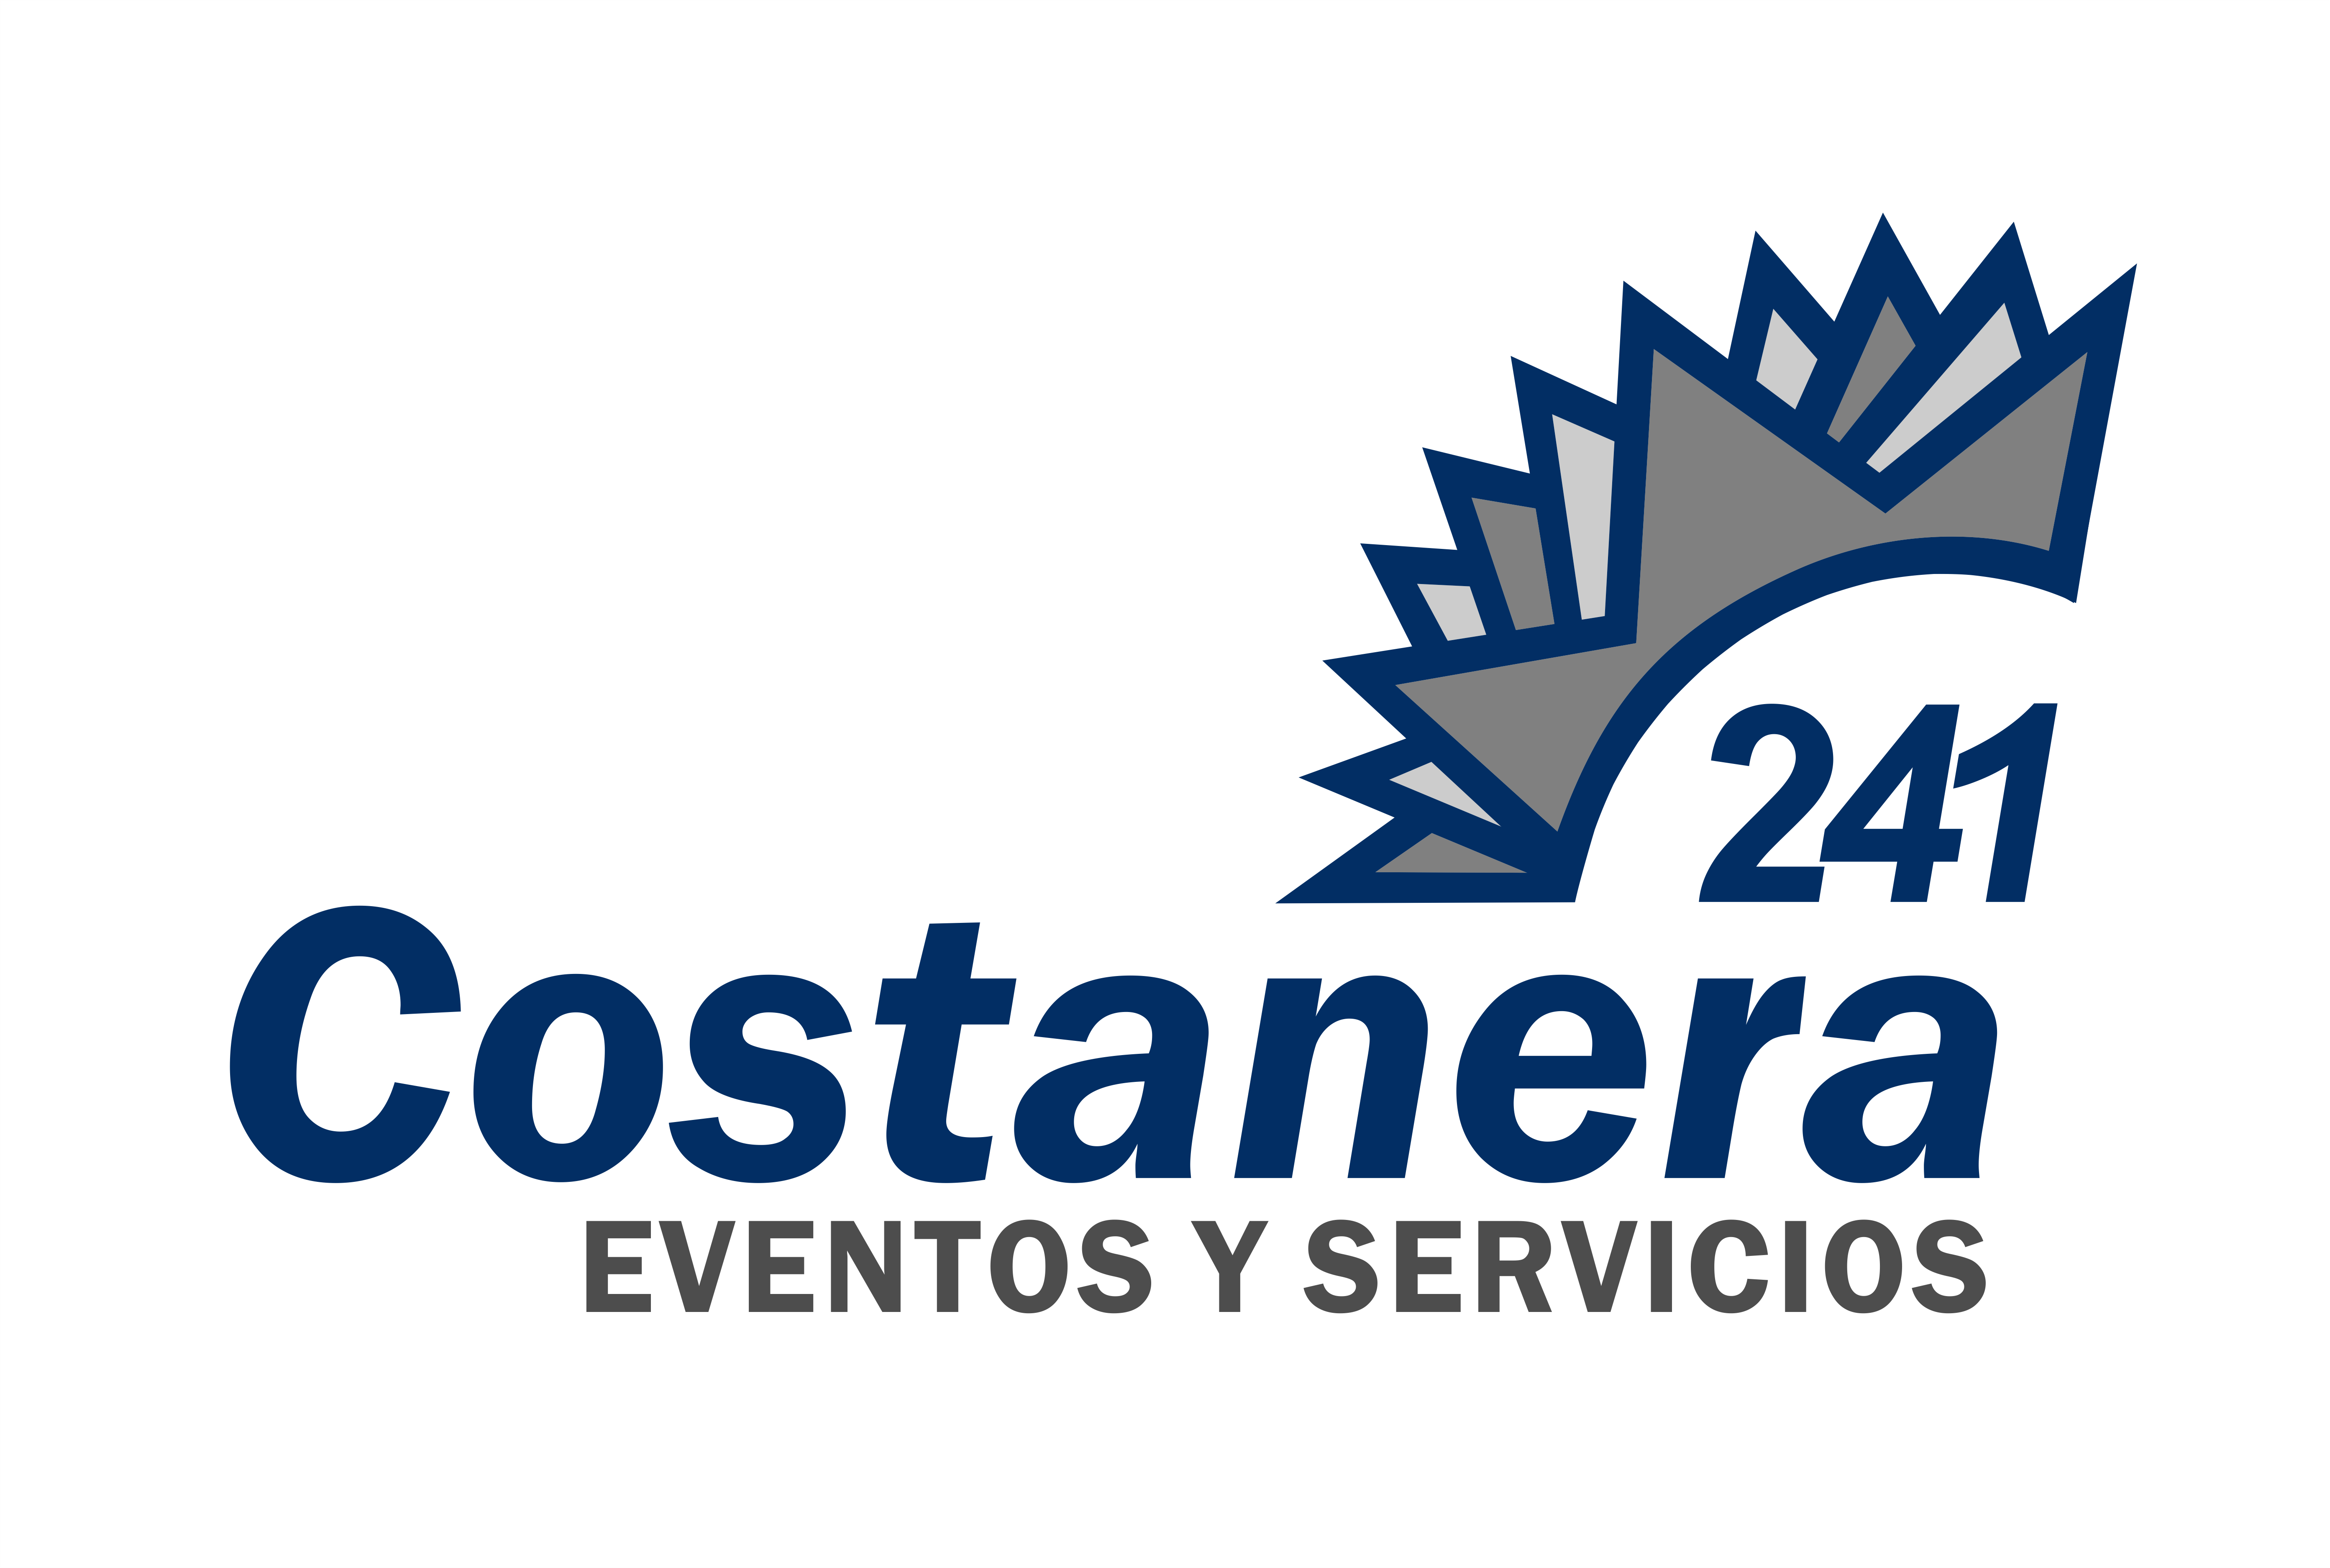 Costanera 241 Eventos y Servicios